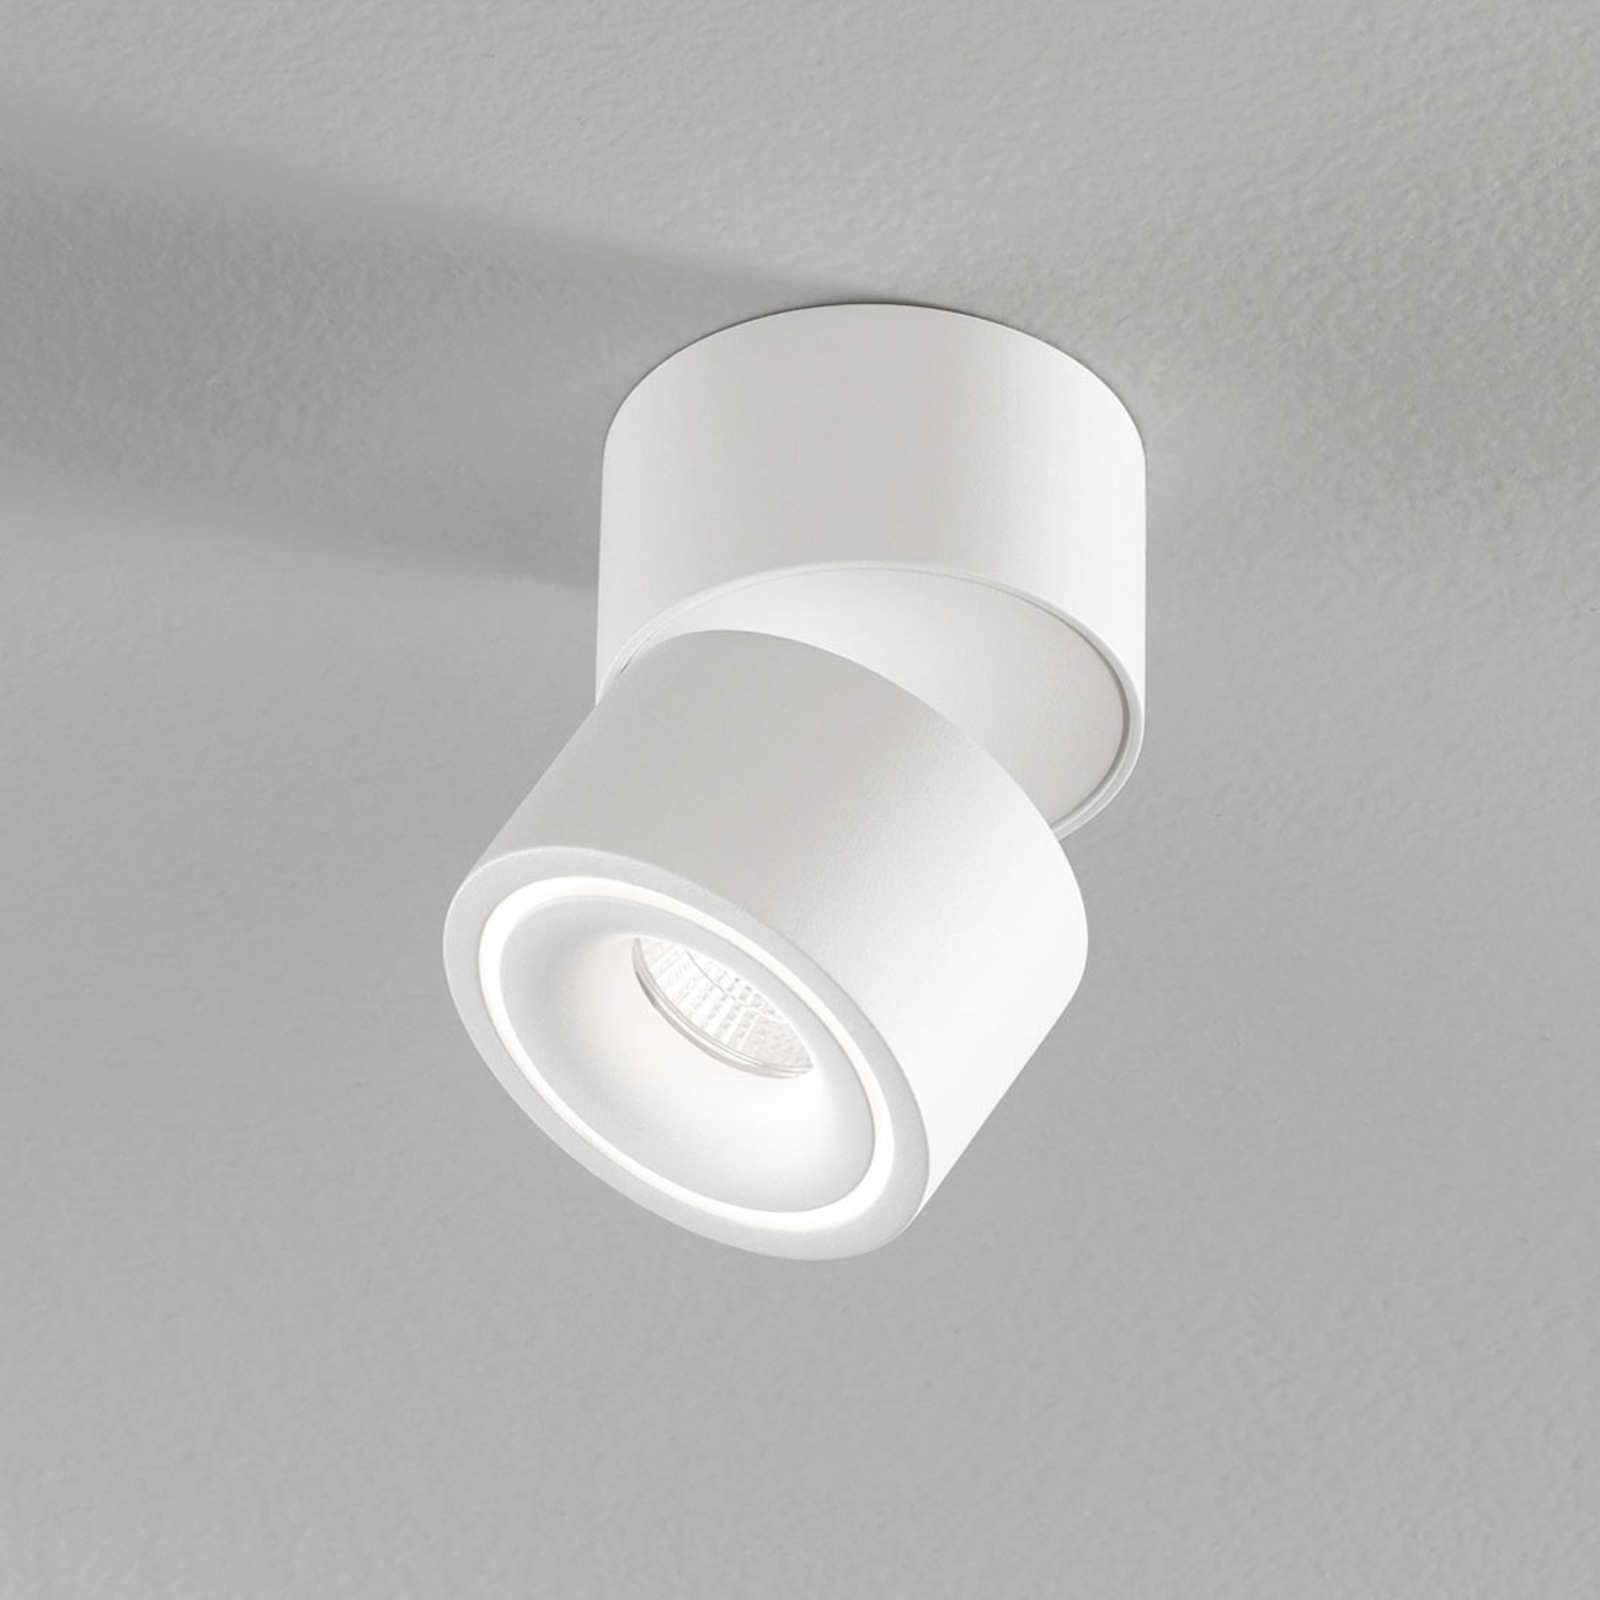 Egger Clippo S LED mennyezeti spotlámpa, fehér